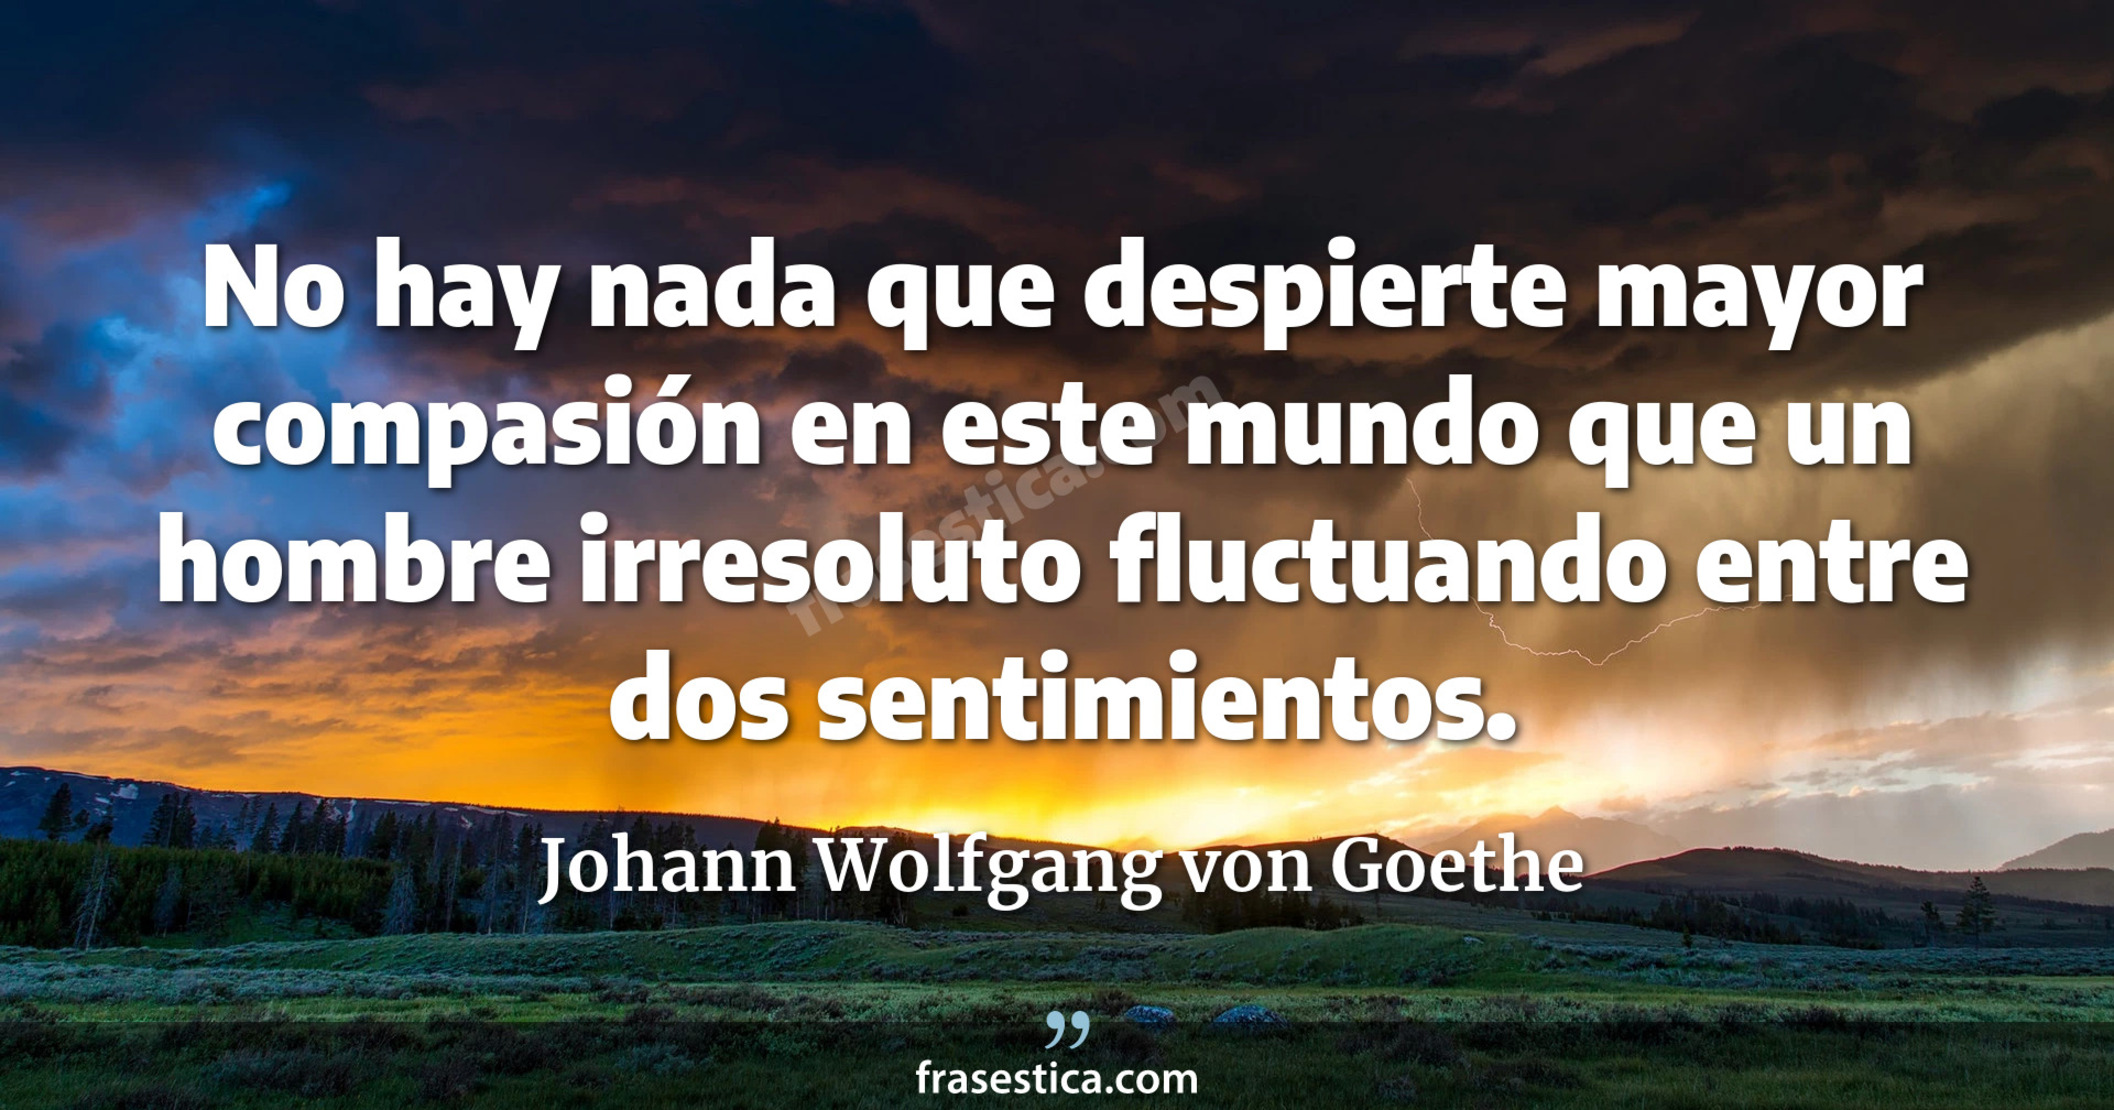 No hay nada que despierte mayor compasión en este mundo que un hombre irresoluto fluctuando entre dos sentimientos. - Johann Wolfgang von Goethe